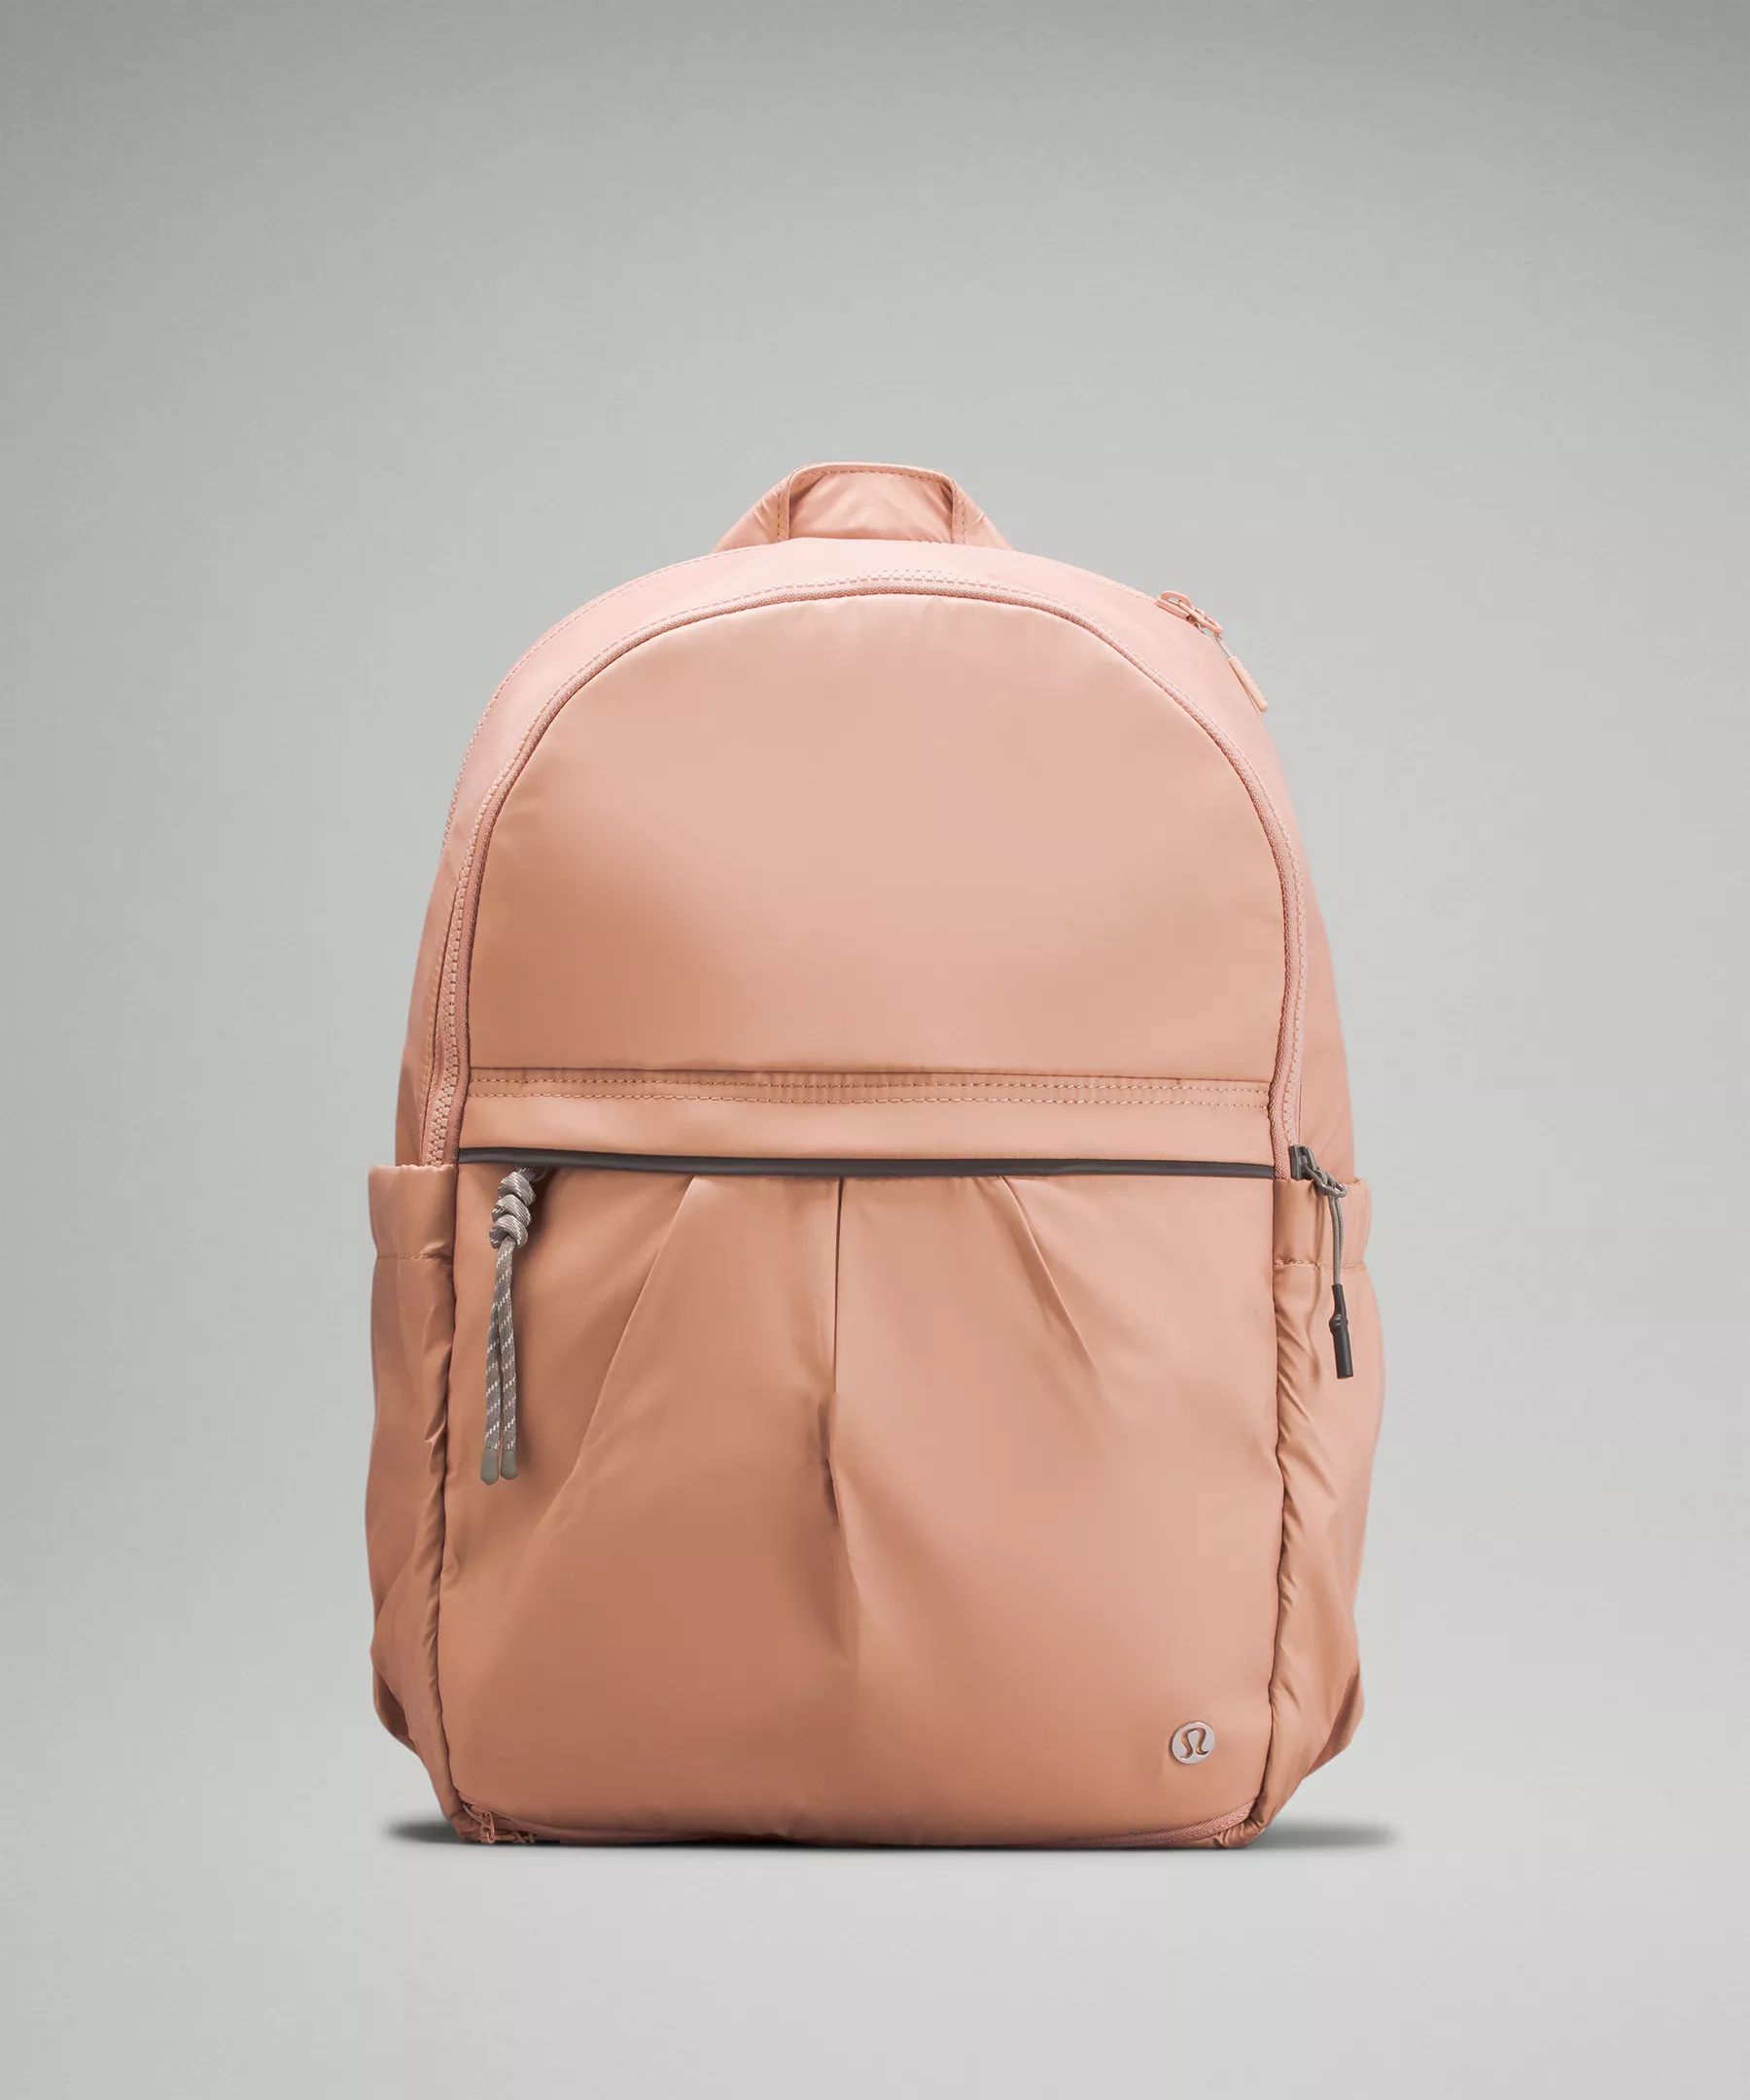 Pack It Up Backpack 21L | Lululemon (US)